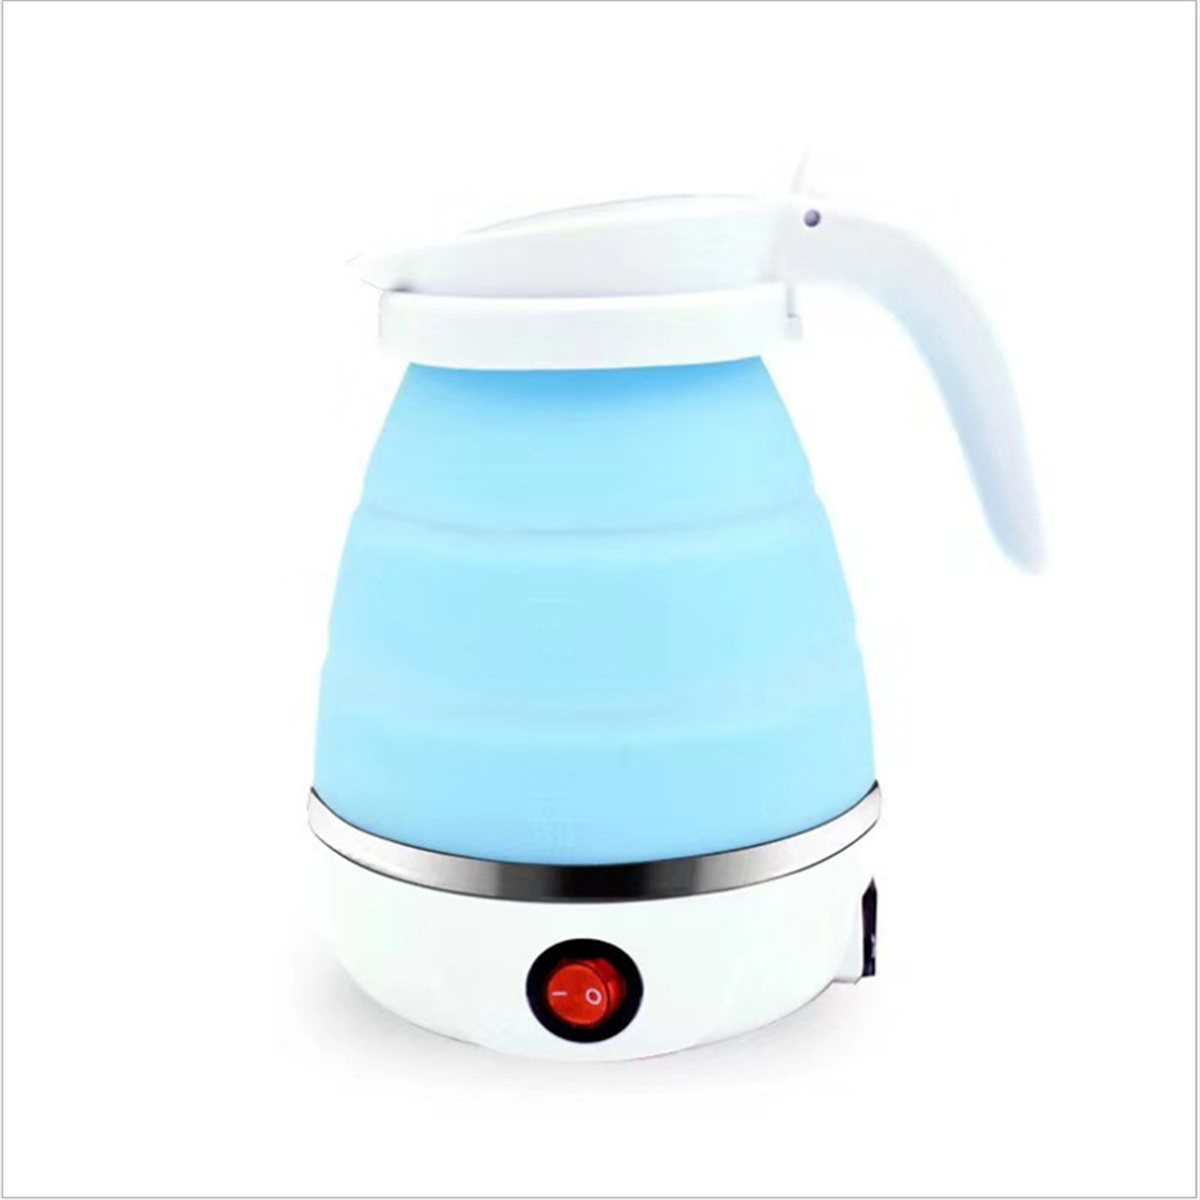 FEI Elektrischer Wasserkocher Zusammenklappbarer Wasserkocher Wasserkocher, Mini-Wasserkocher 304 Weiß Edelstahl Weiß